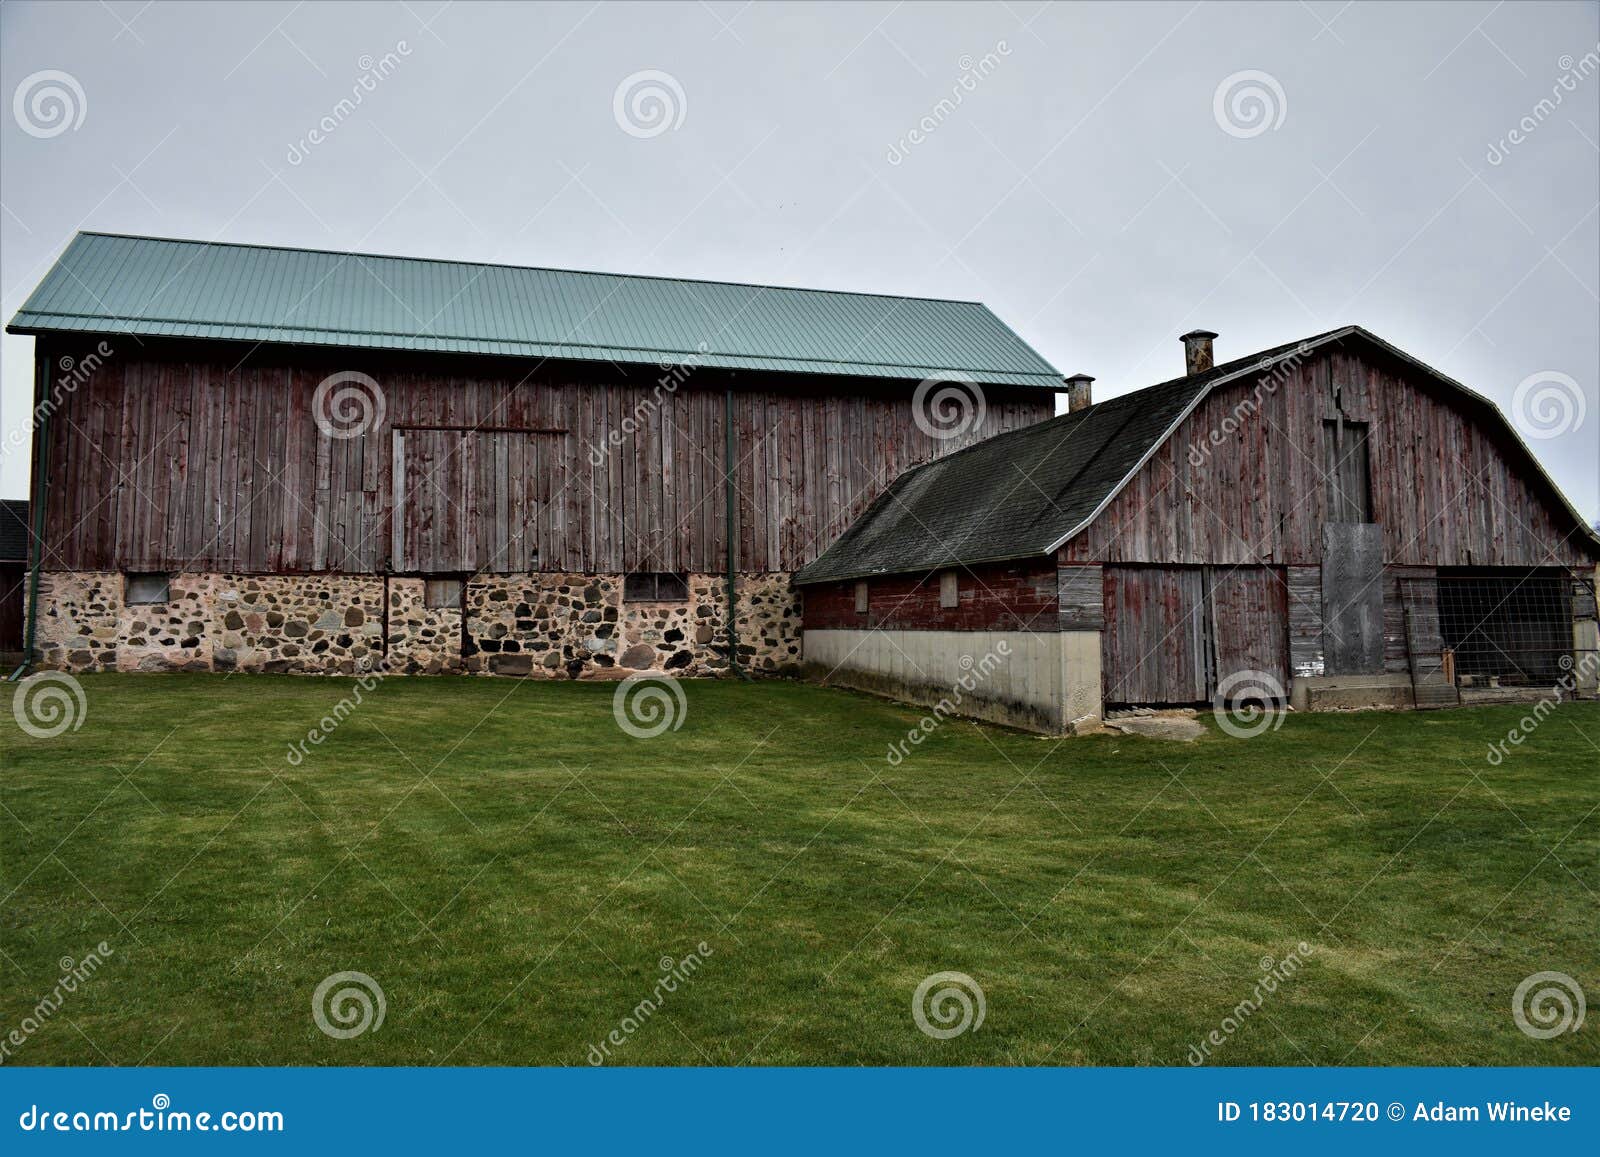 dorothy carnes county park barn